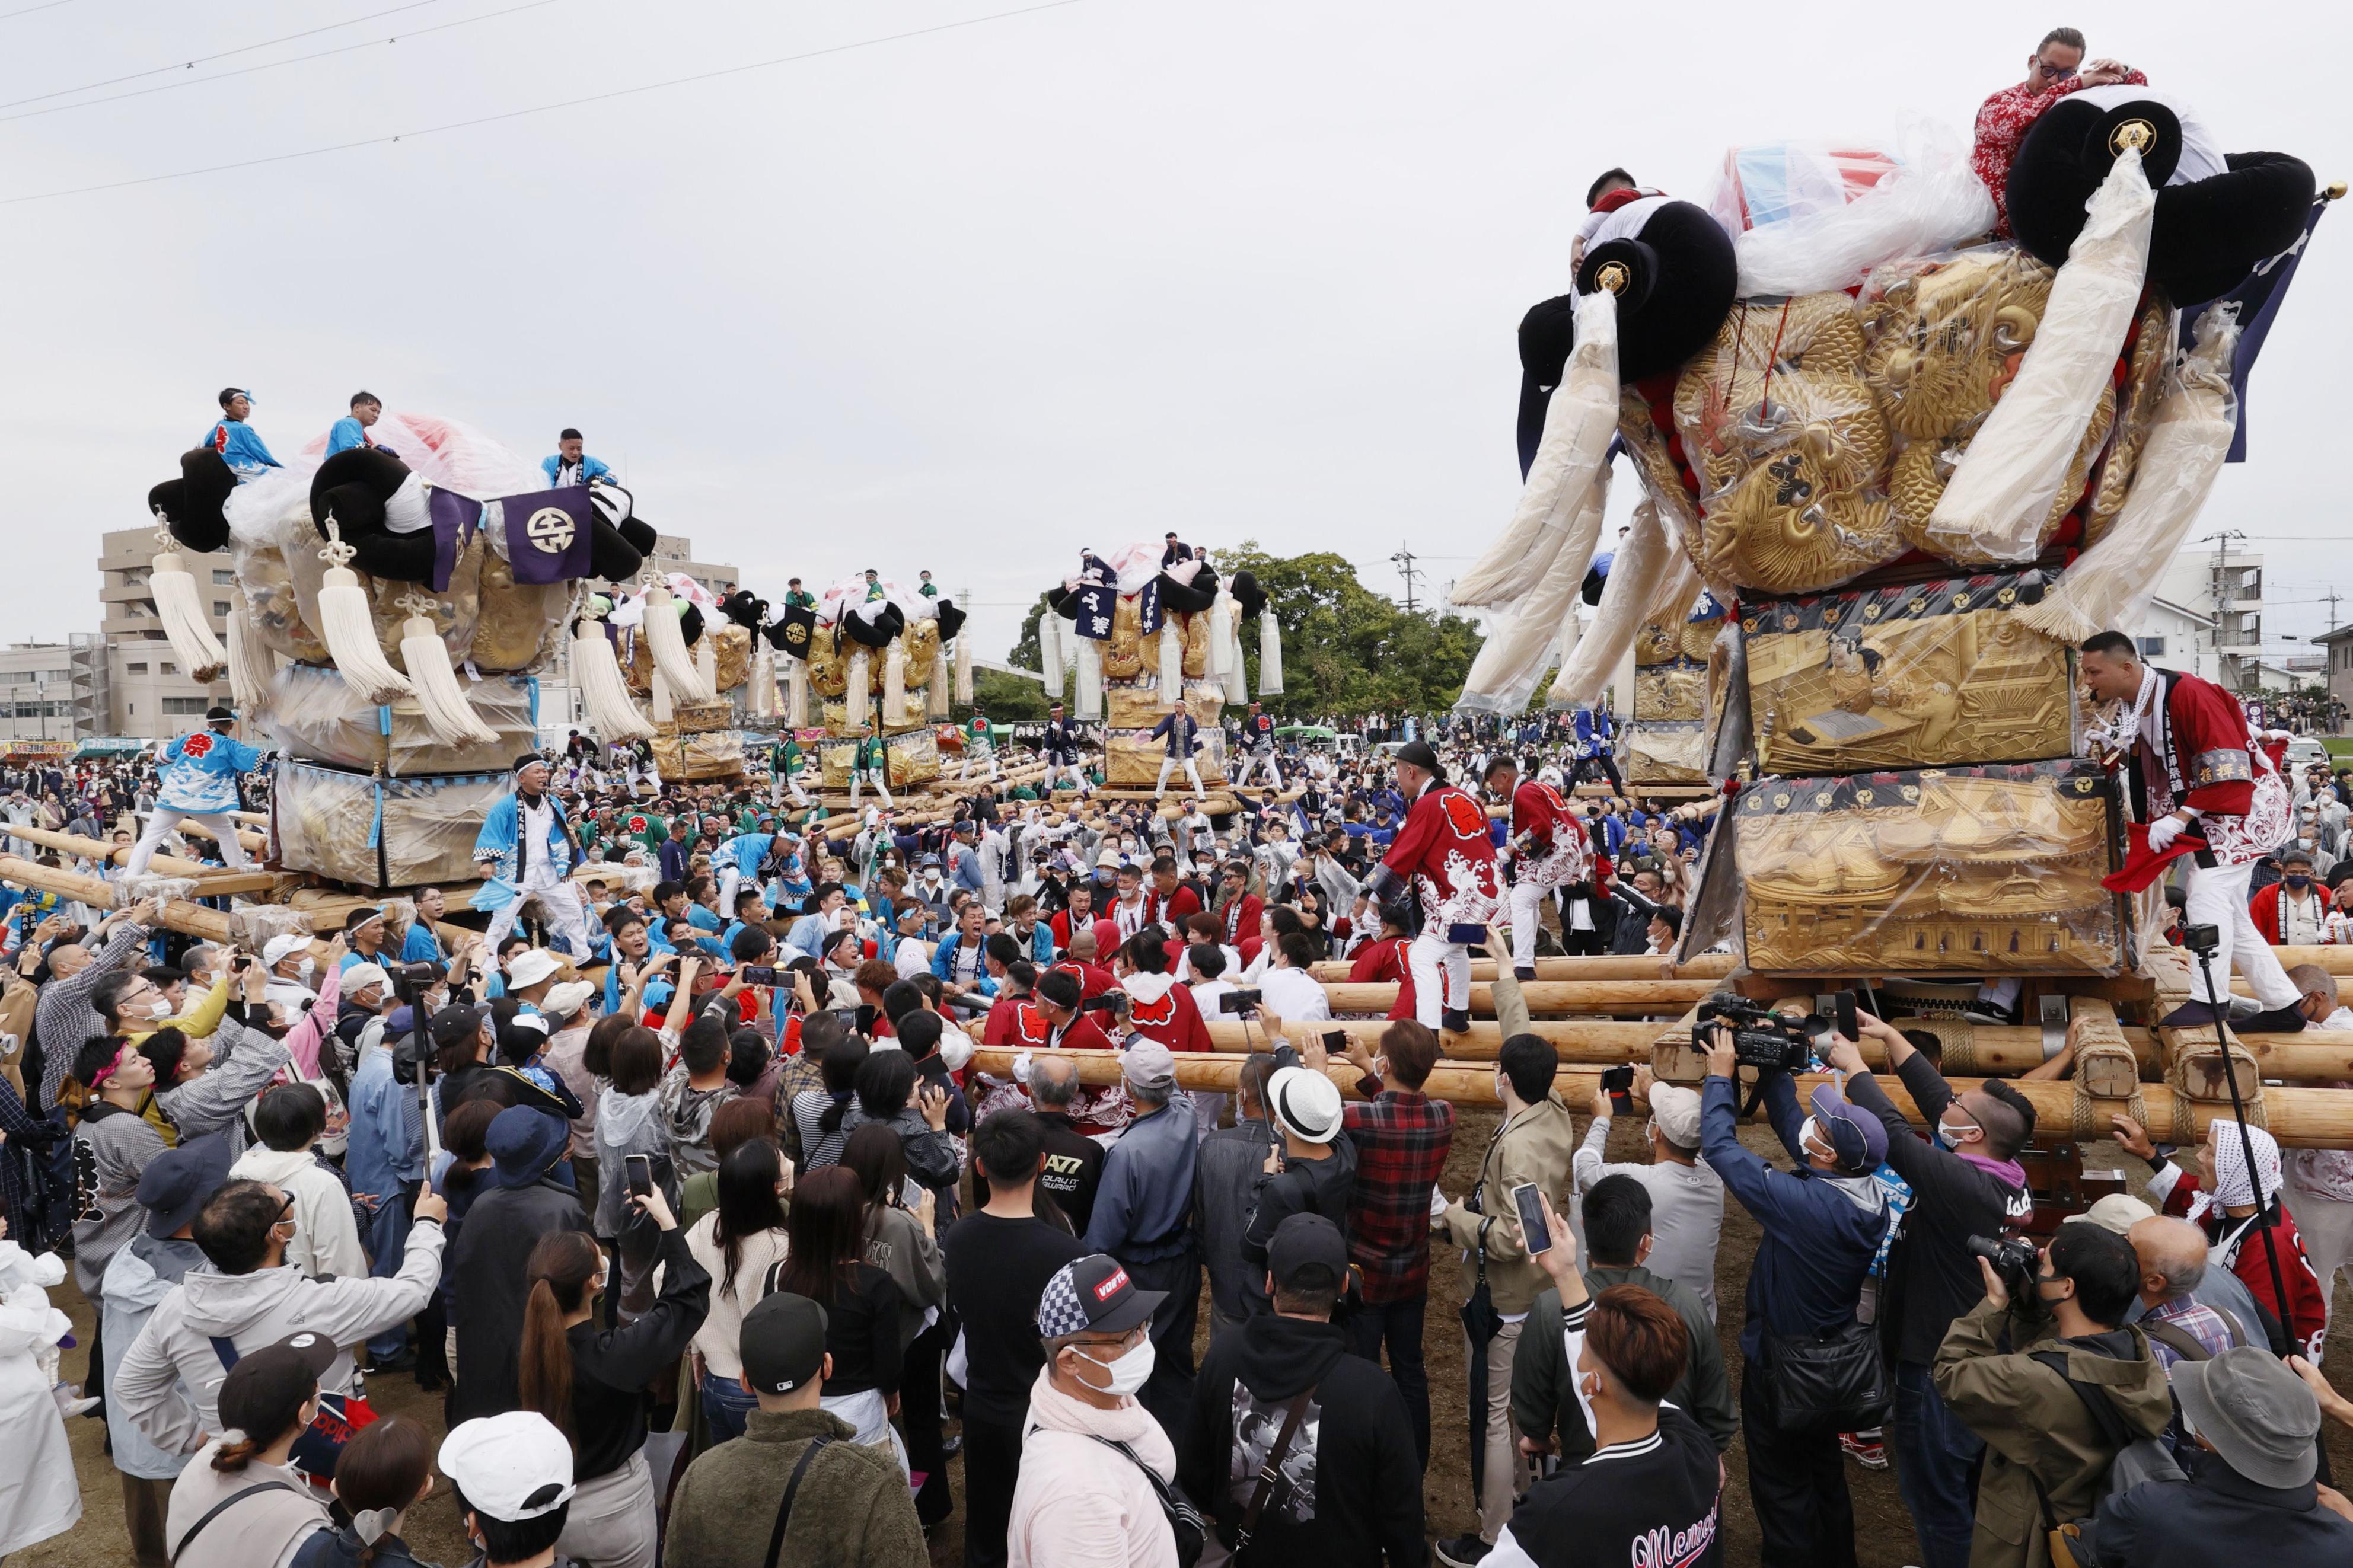 豪華な装飾の山車に歓声 愛媛「新居浜太鼓祭り」 - 産経ニュース